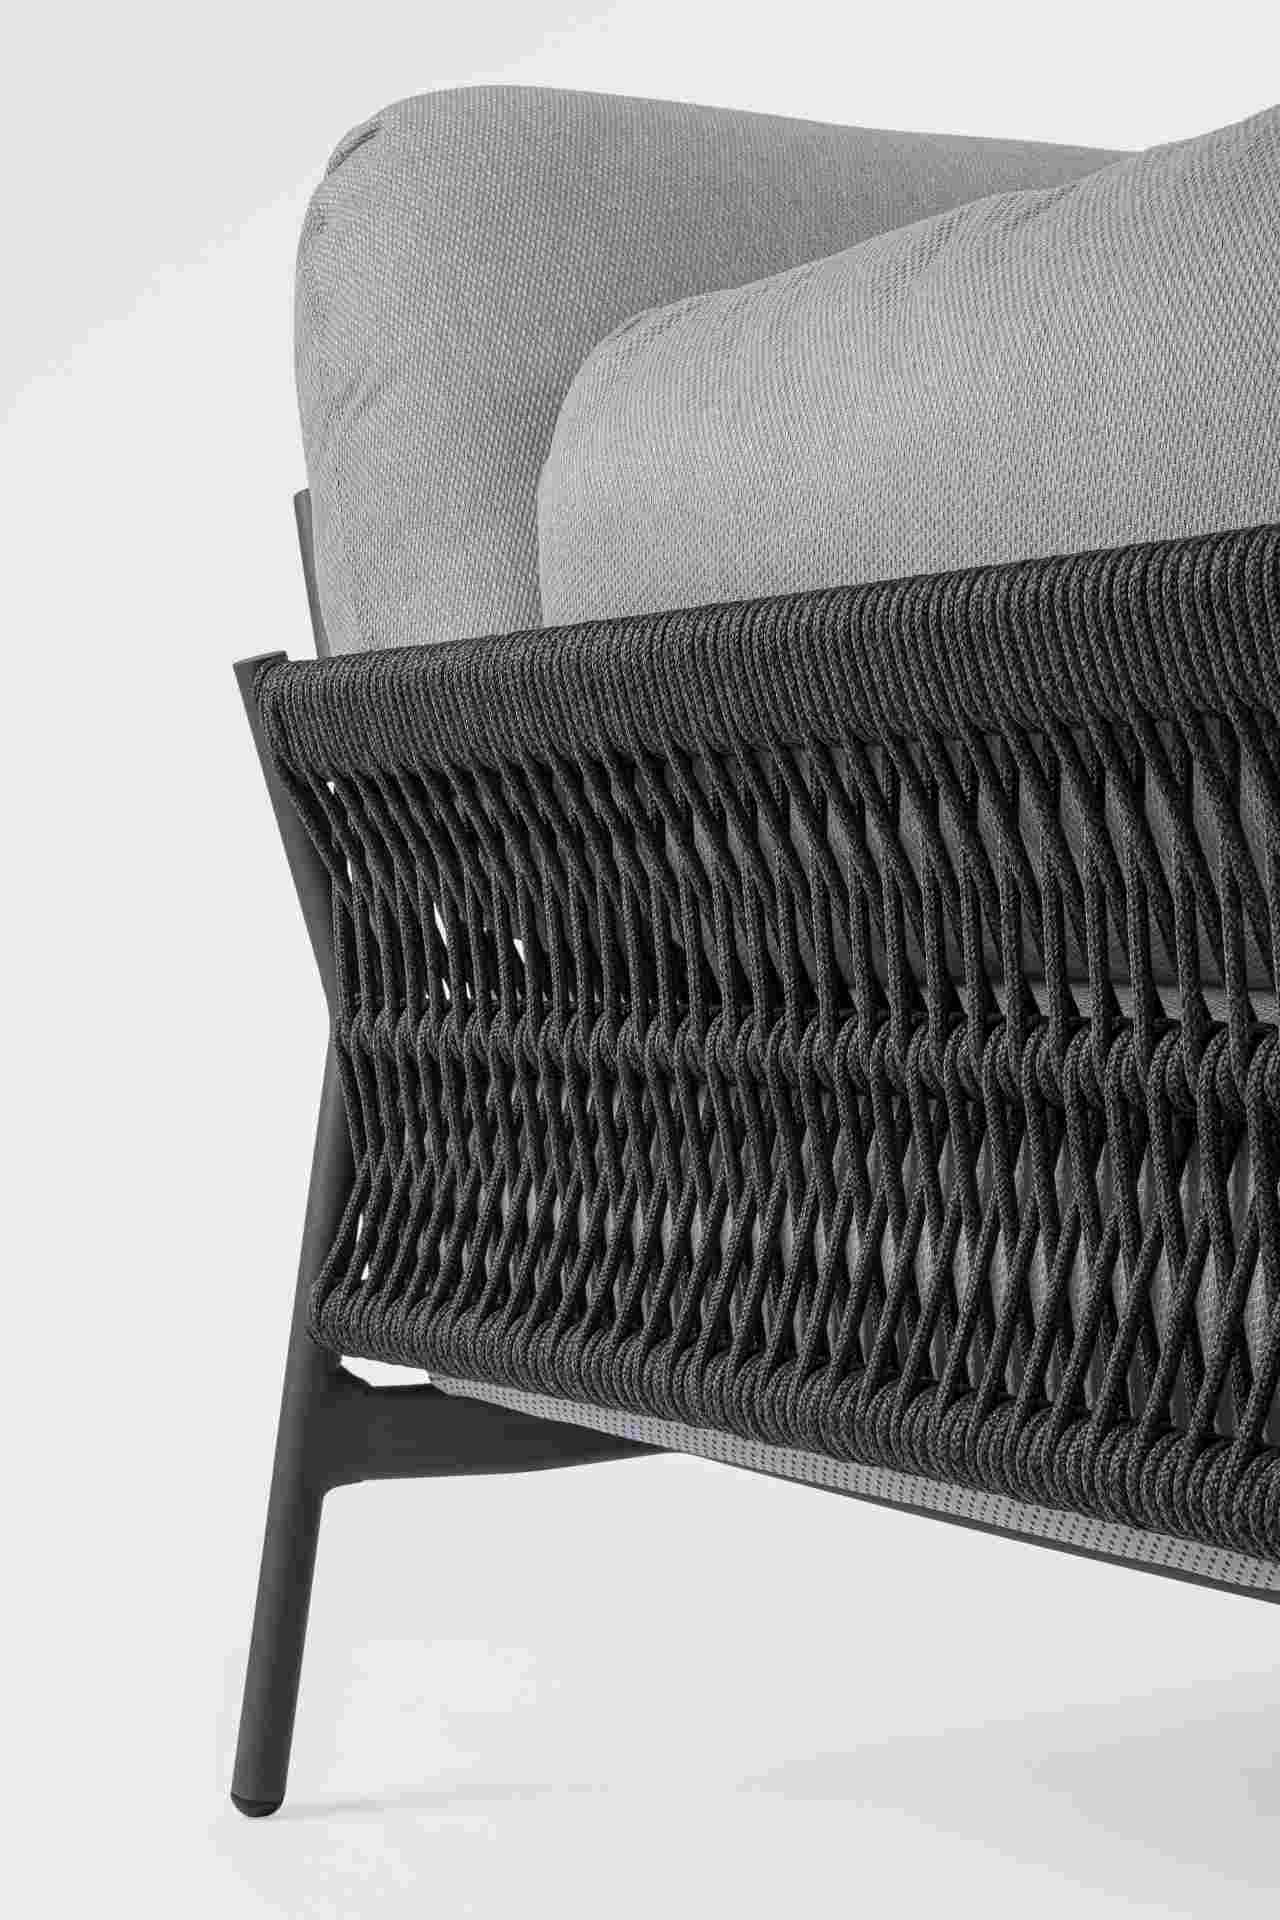 Das Gartensofa Pardis überzeugt mit seinem modernen Design. Gefertigt wurde es aus Olefin-Stoff, welcher einen grauen Farbton besitzt. Das Gestell ist aus Aluminium und hat eine Anthrazit Farbe. Das Sofa verfügt über eine Sitzhöhe von 38 cm und ist für de